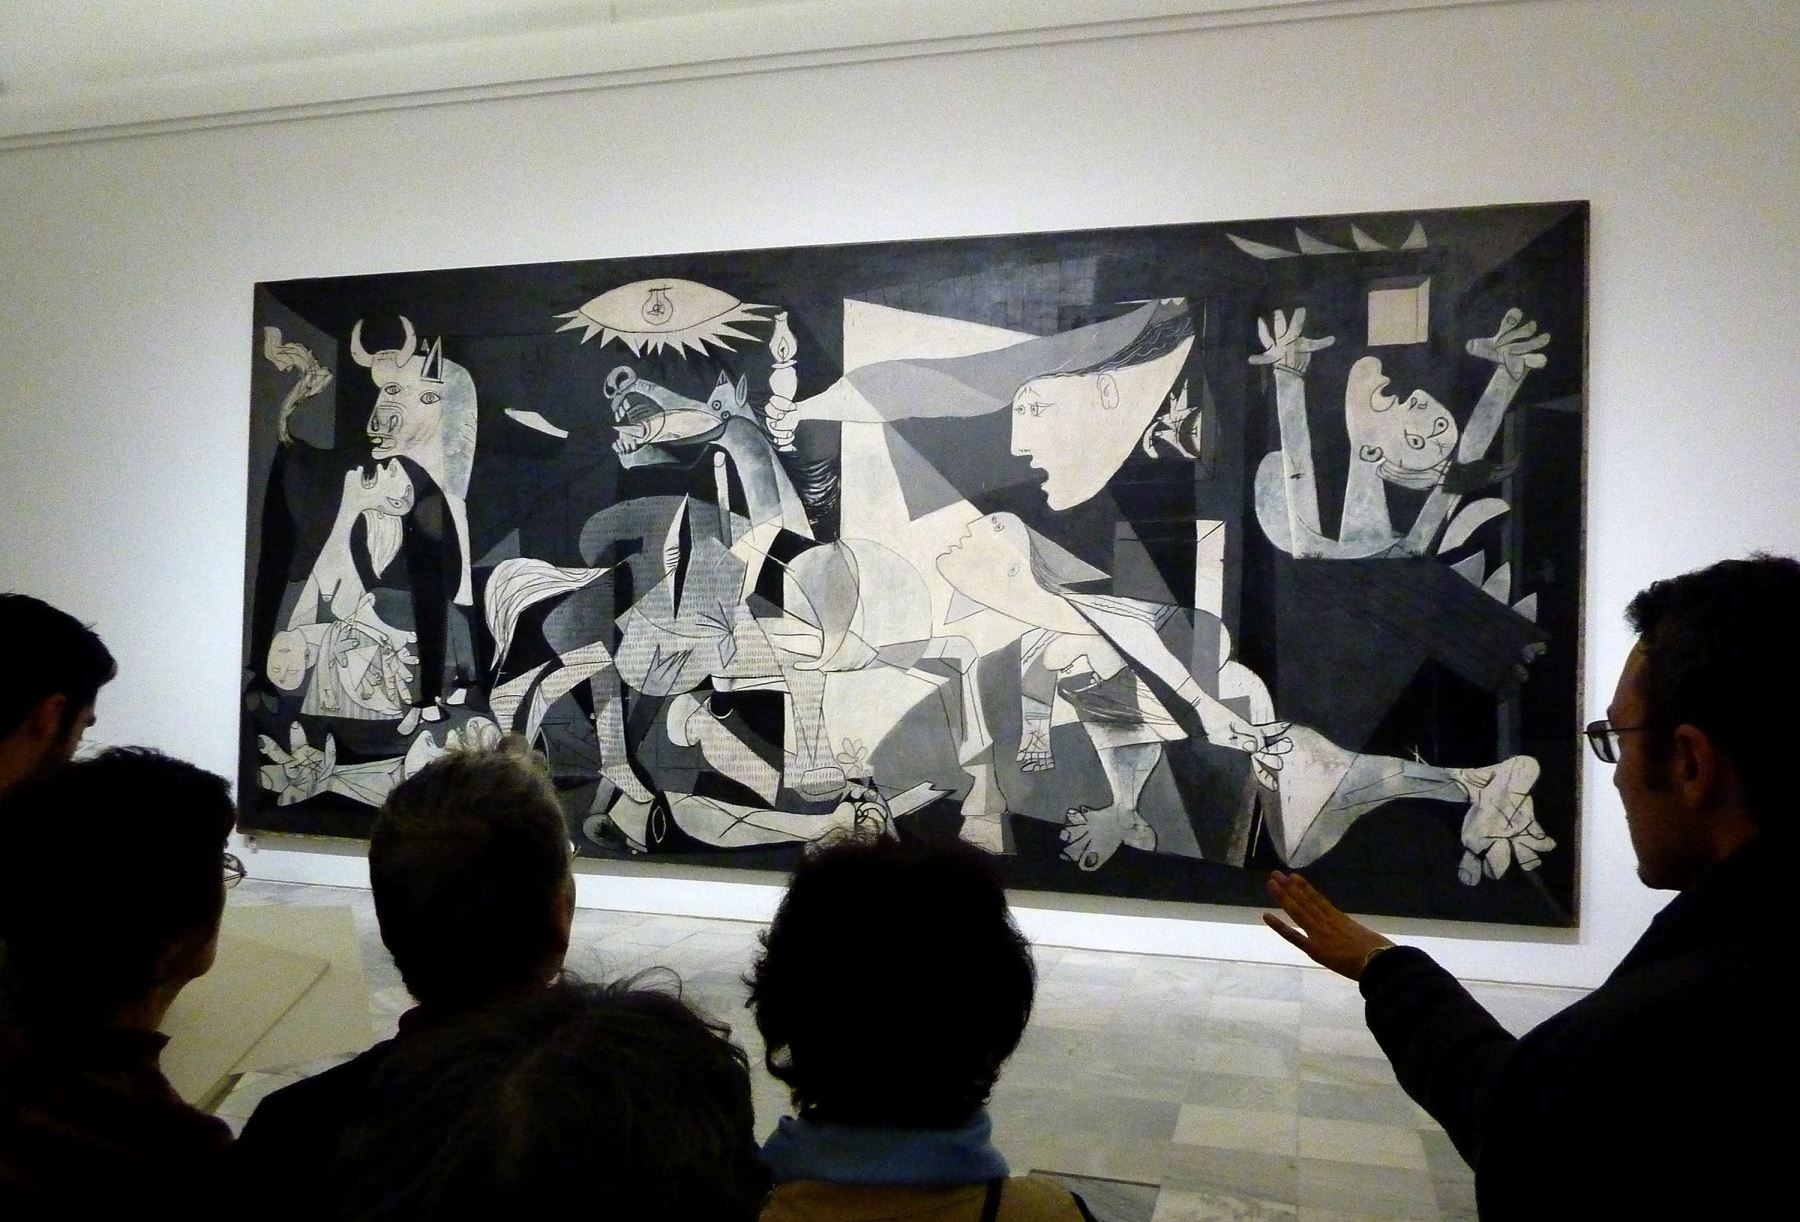 La gente mira el cuadro original de la Guernica de Pablo Picasso en el museo Reina Sofía de Madrid. Foto: AFP